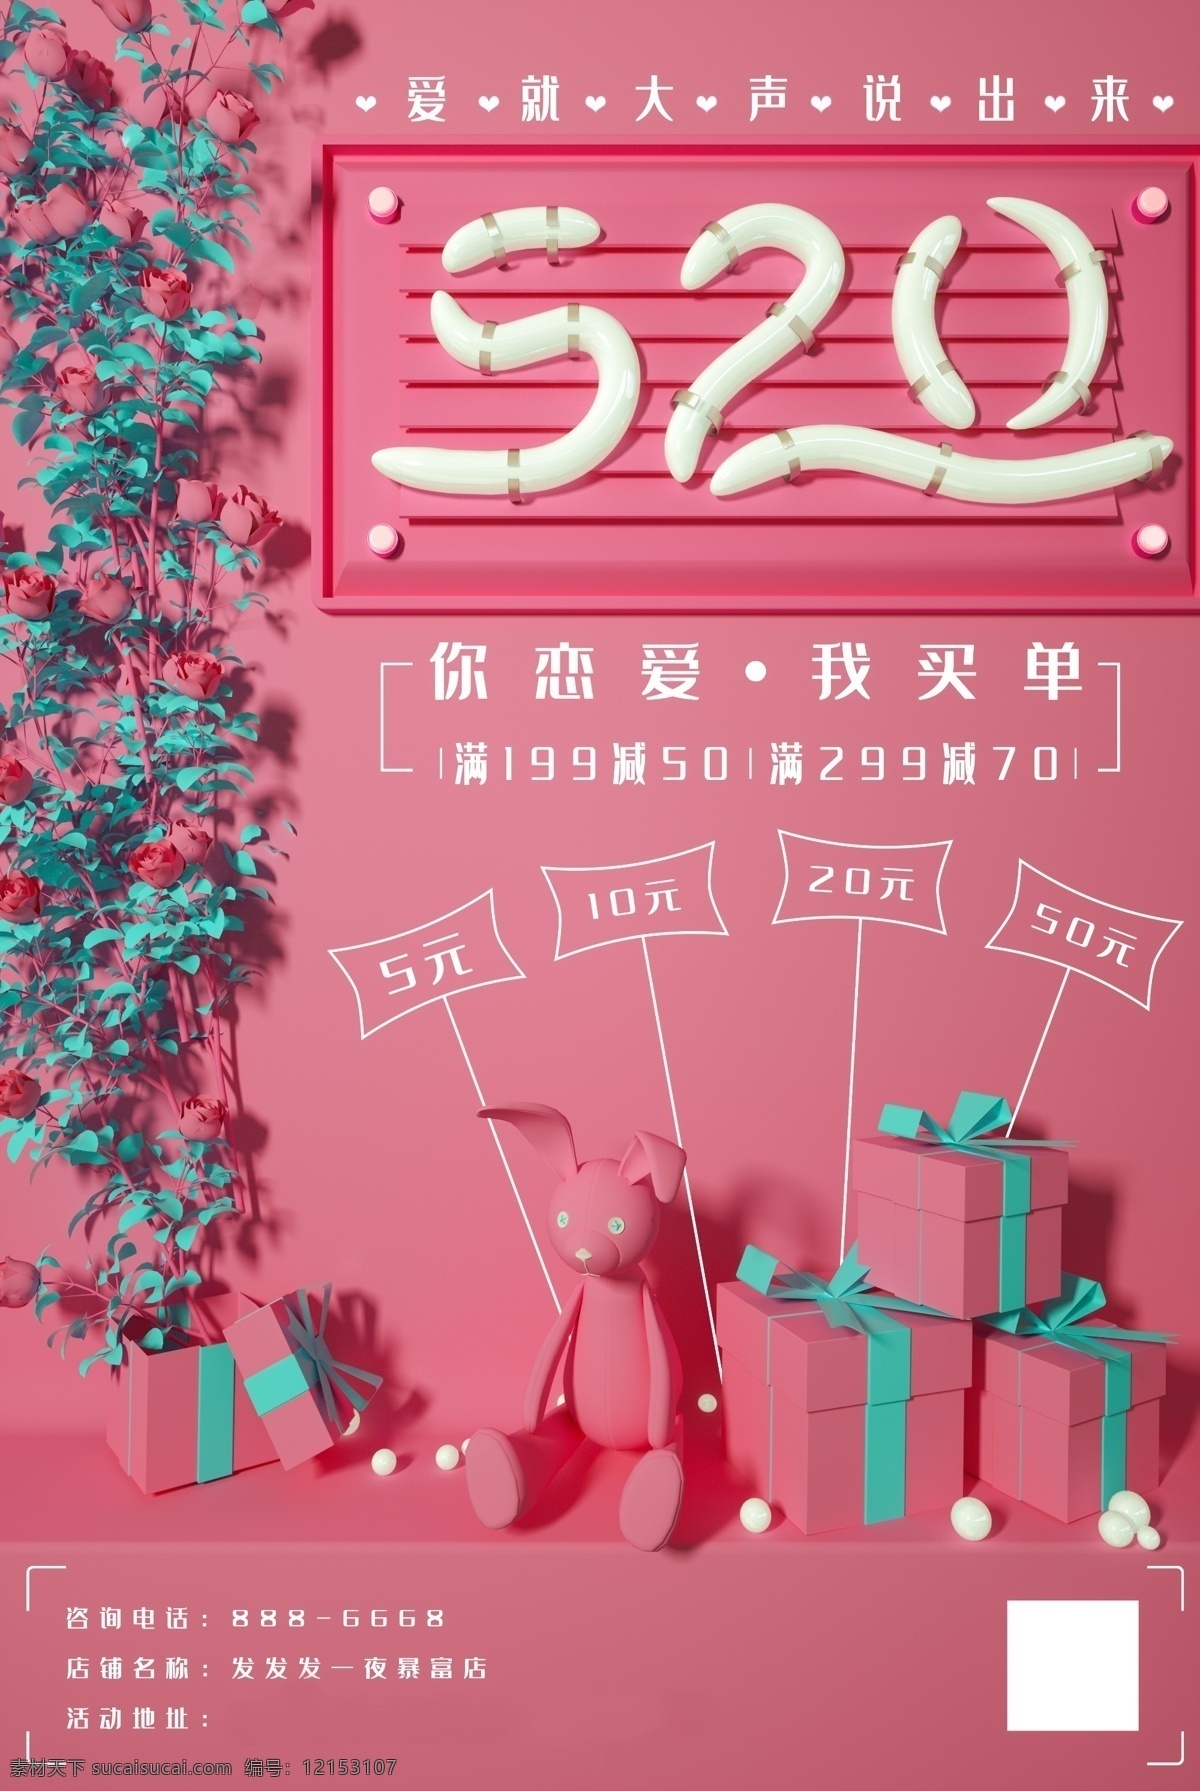 520 粉色 浪漫 促销 海报 表白 约会 情人 恋人 爱人 暗恋 商场活动 宣传 礼物